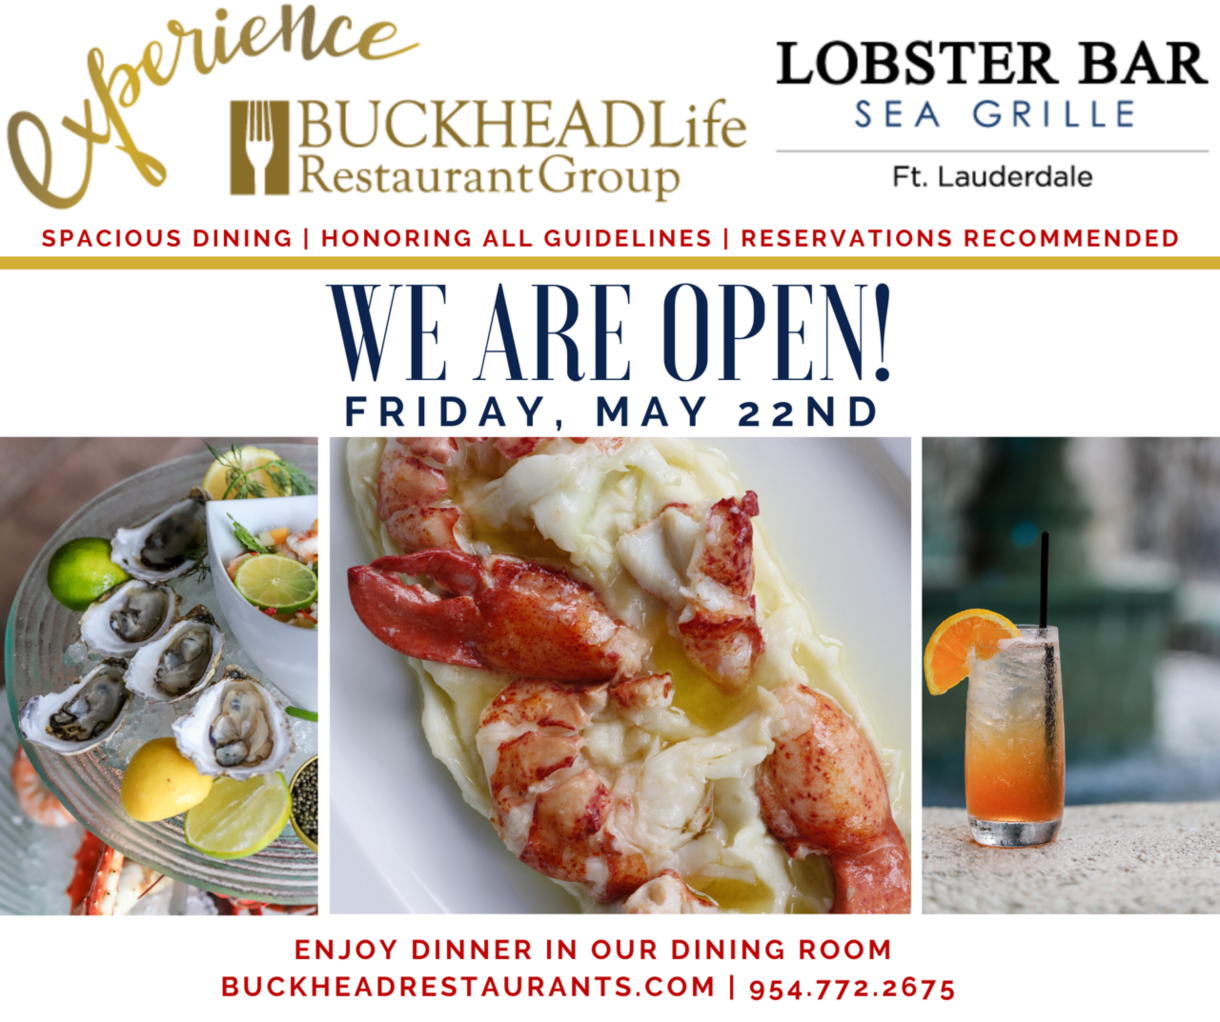 Lobster Bar Sea Grille - Fort Lauderdale